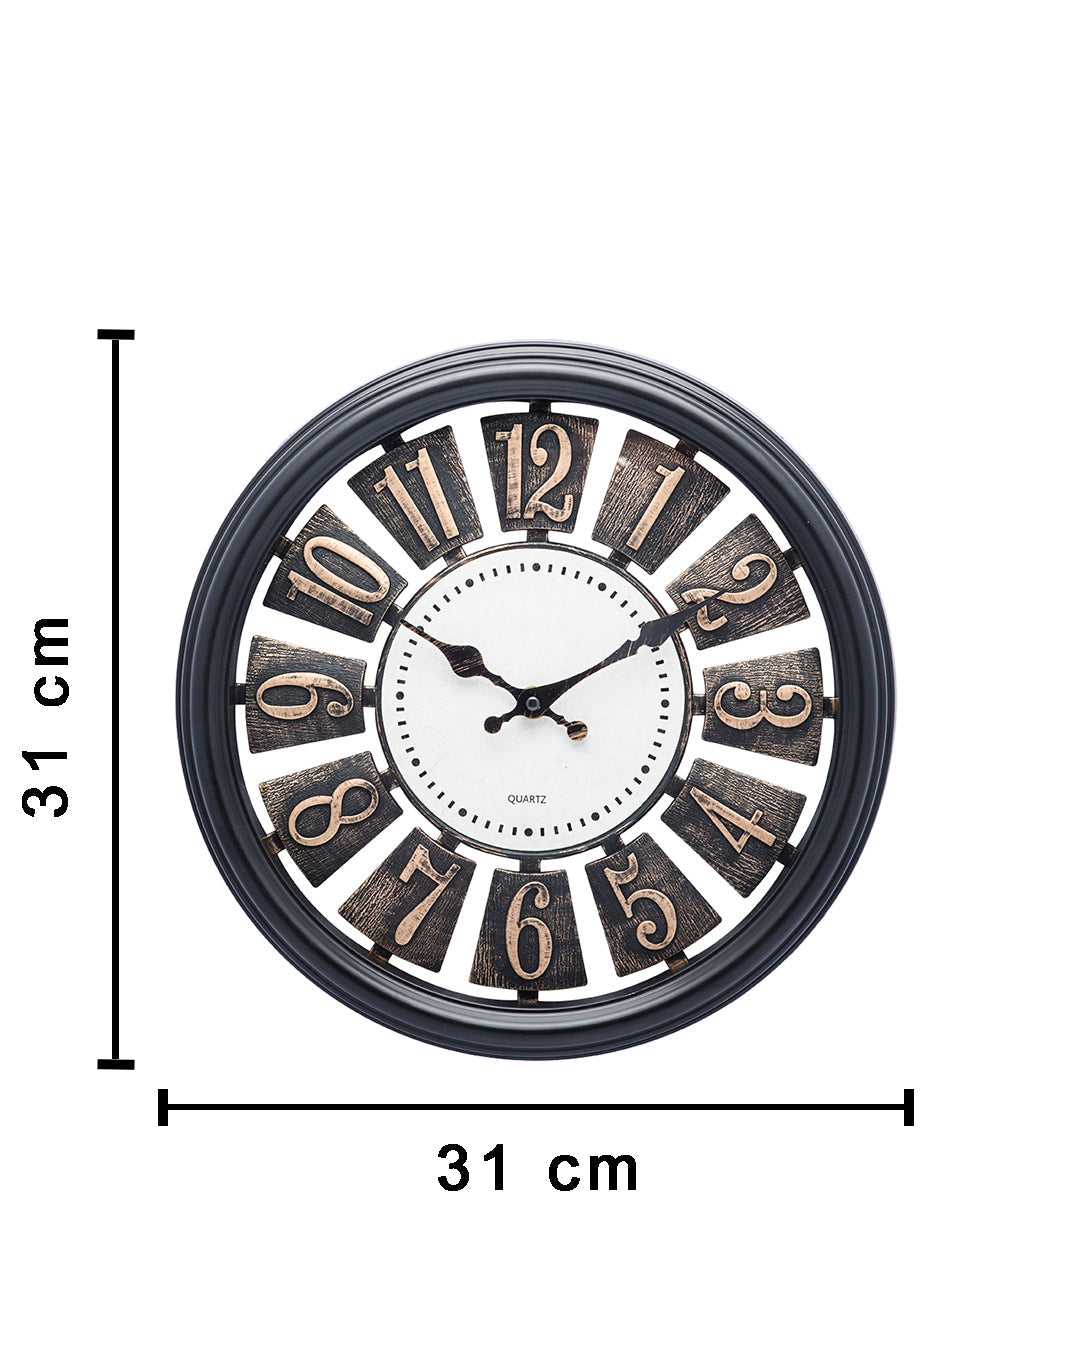 VON CASA 12 inch Vintage Wall Clock